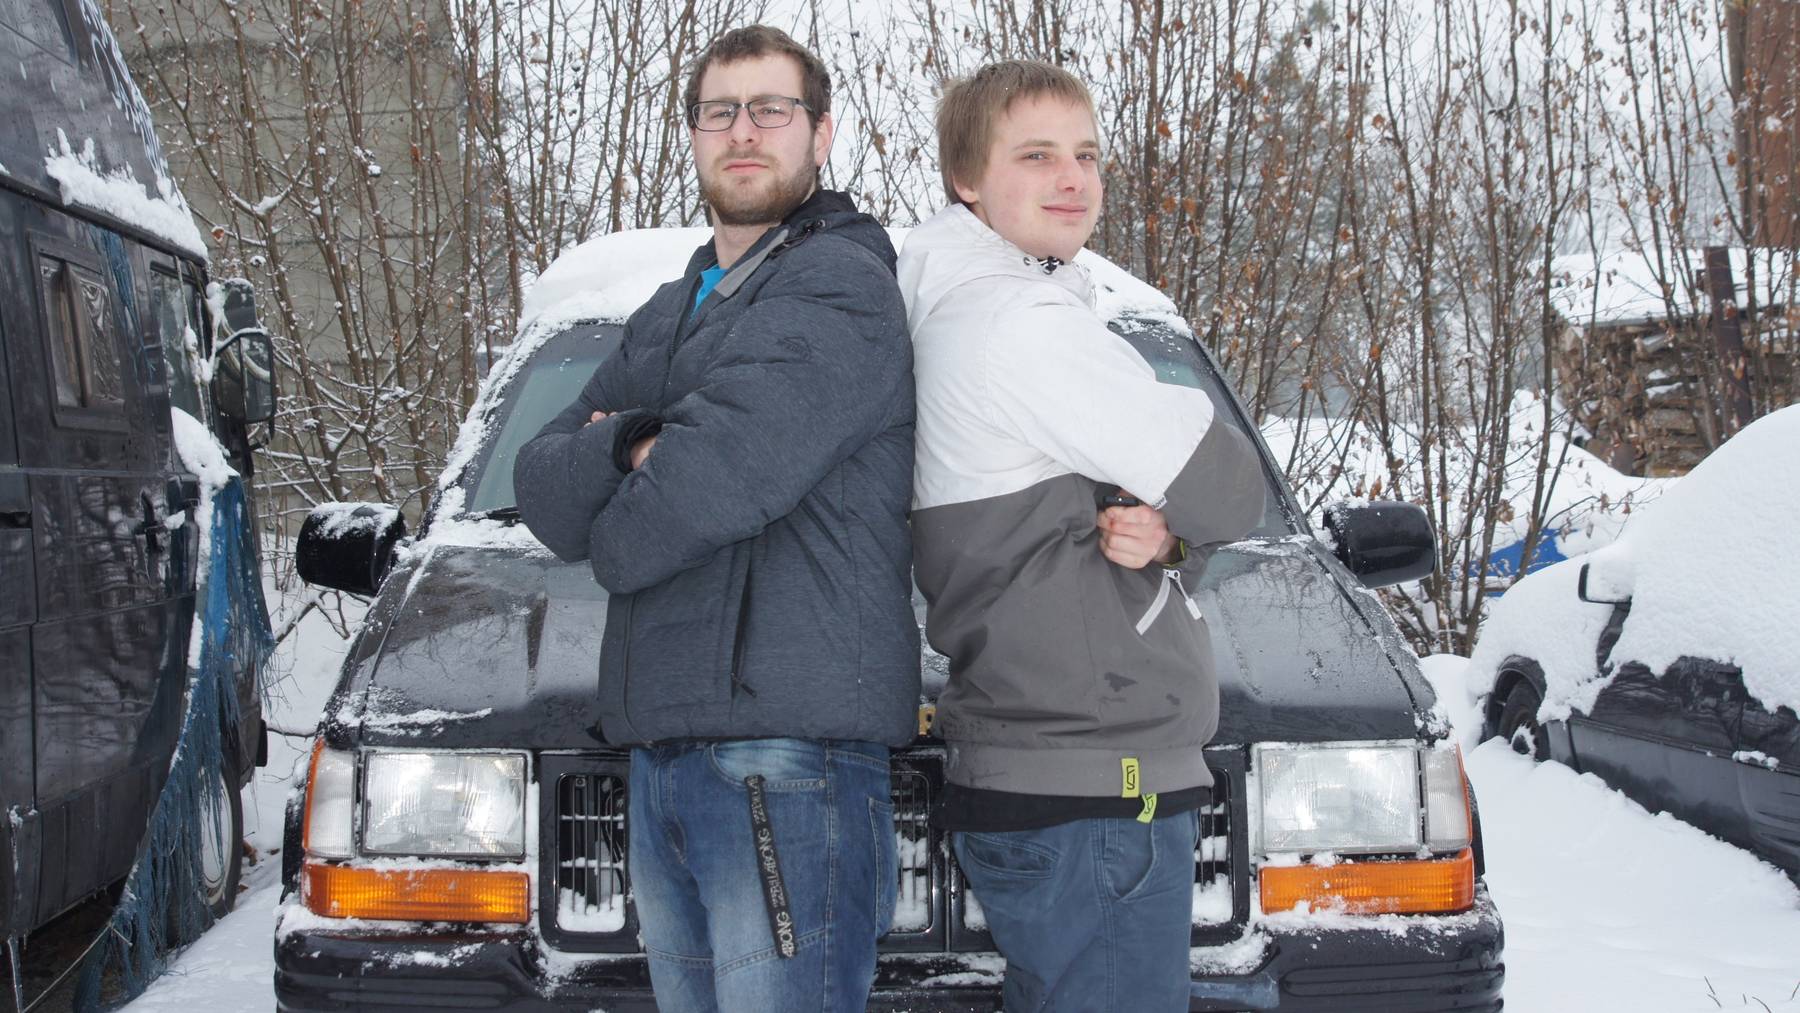 Benj Moser und Aaron Giger aus Wilen sind seit Jahren Freunde - und wollen jetzt gemeinsam nach Tschernobyl fahren.